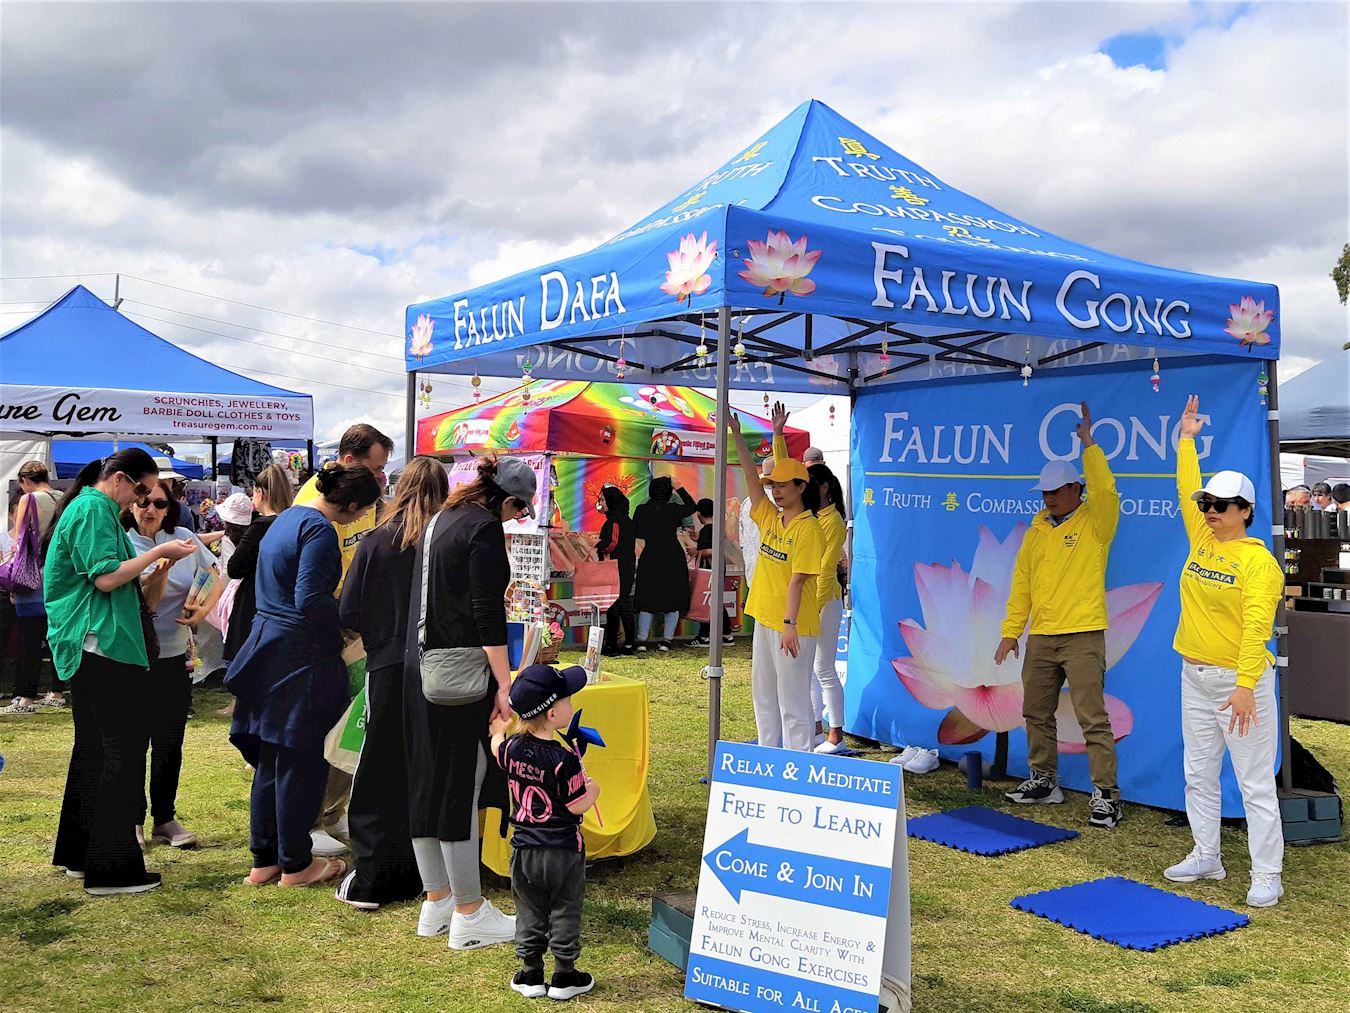 Image for article Australie : Le principe de Dafa attire les visiteurs lors d’une foire communautaire à Perth